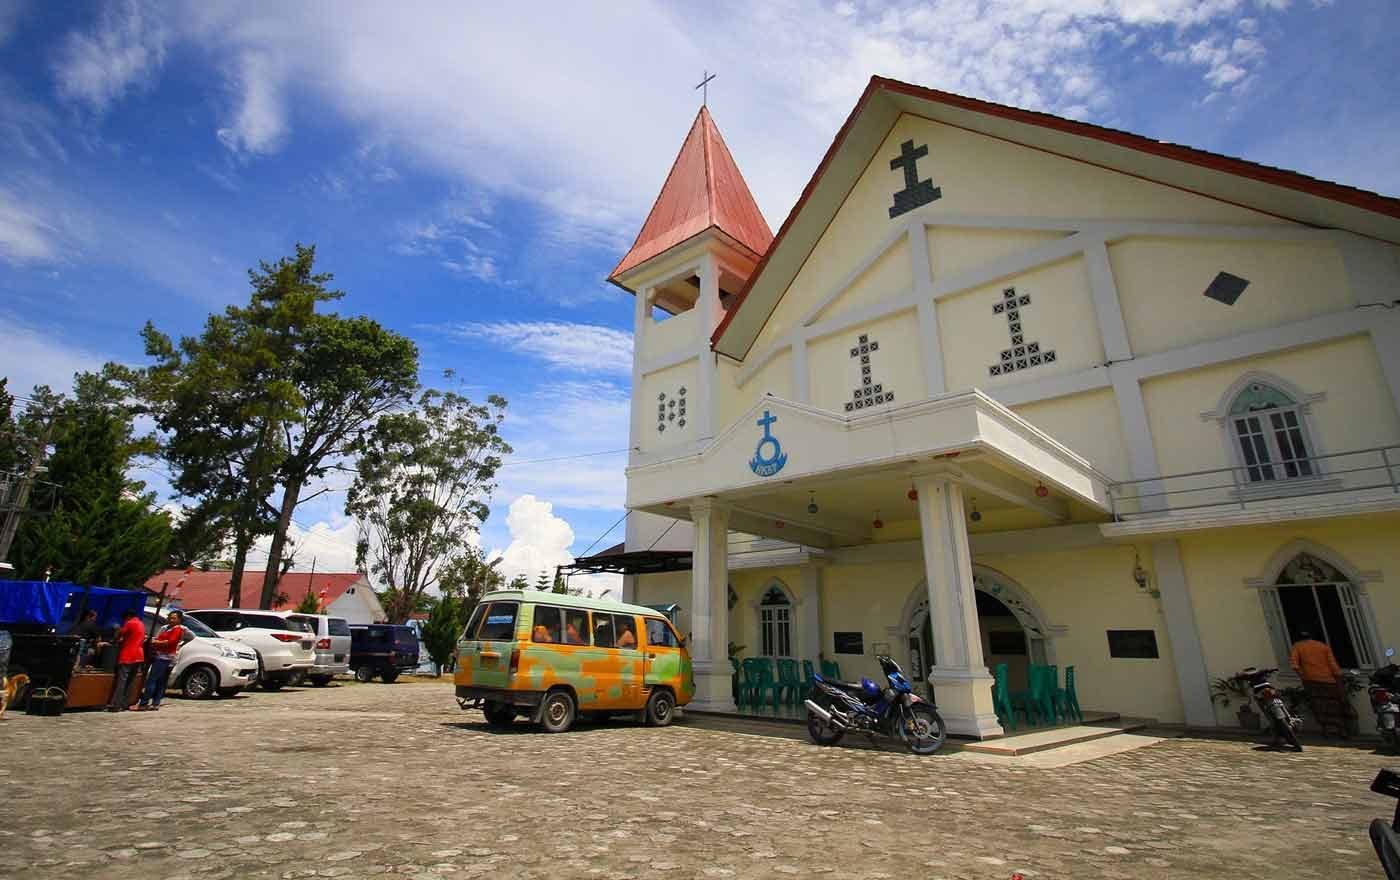 Eine Kirche auf der Insel Samosir in Indonesien, dem diesjährigen Schwerpunktland der Gebetswoche. Foto: pixabay